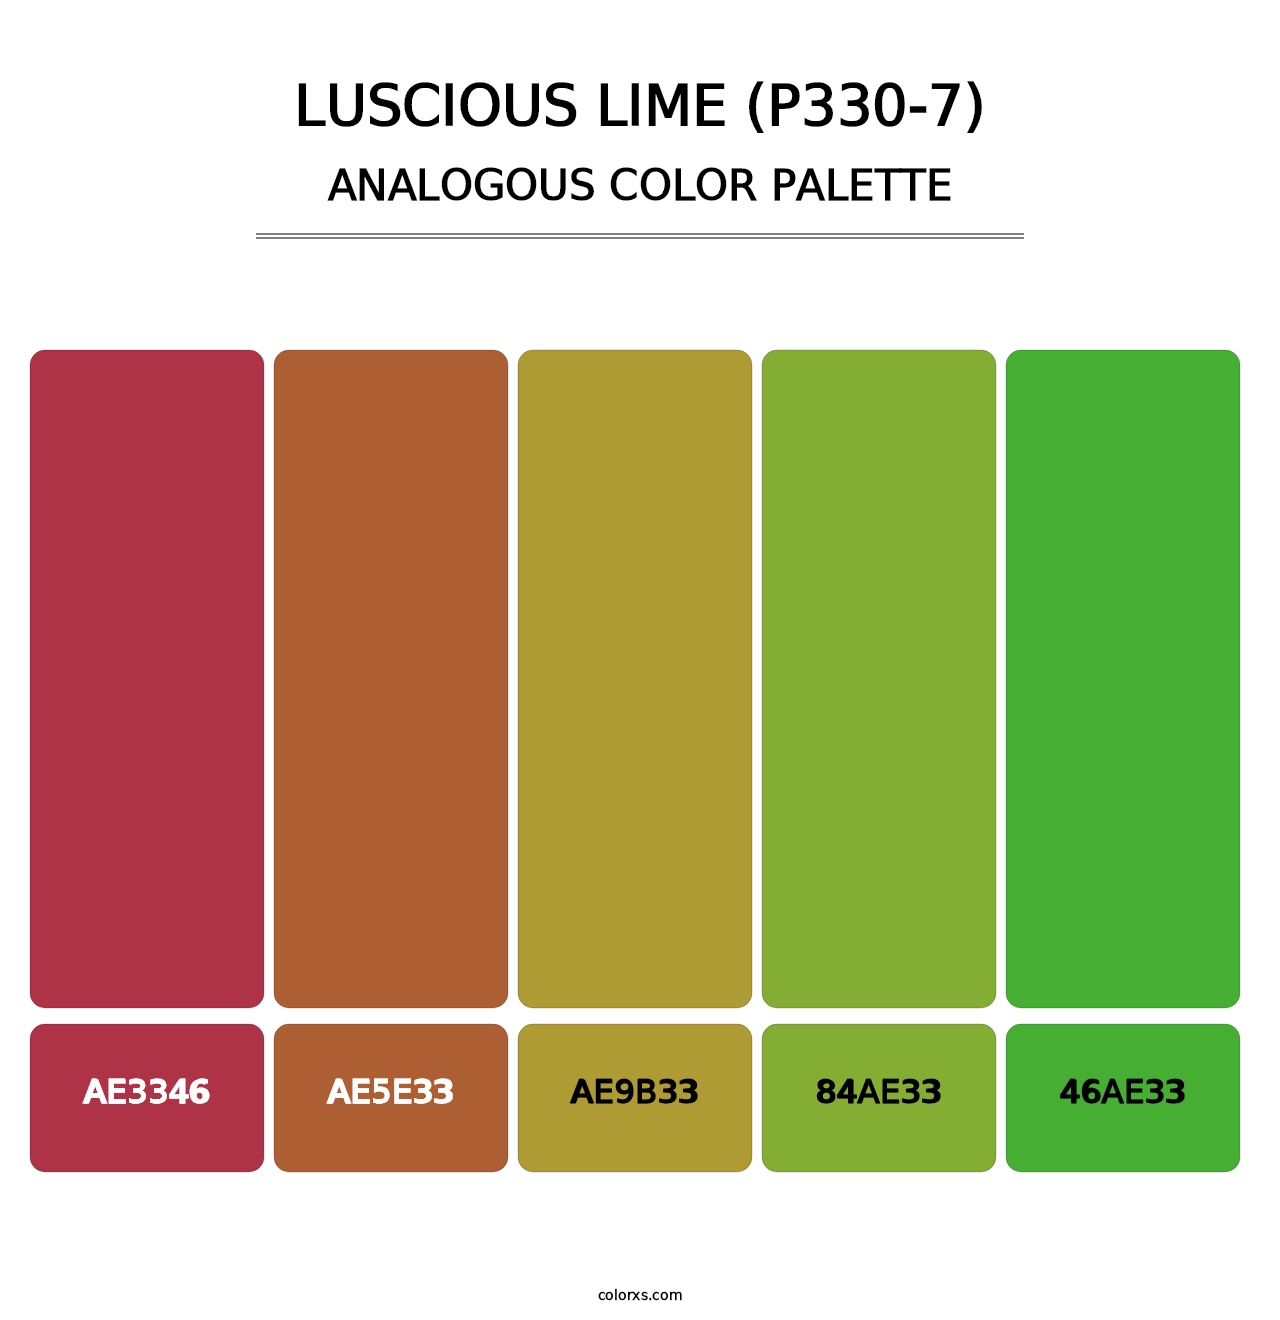 Luscious Lime (P330-7) - Analogous Color Palette